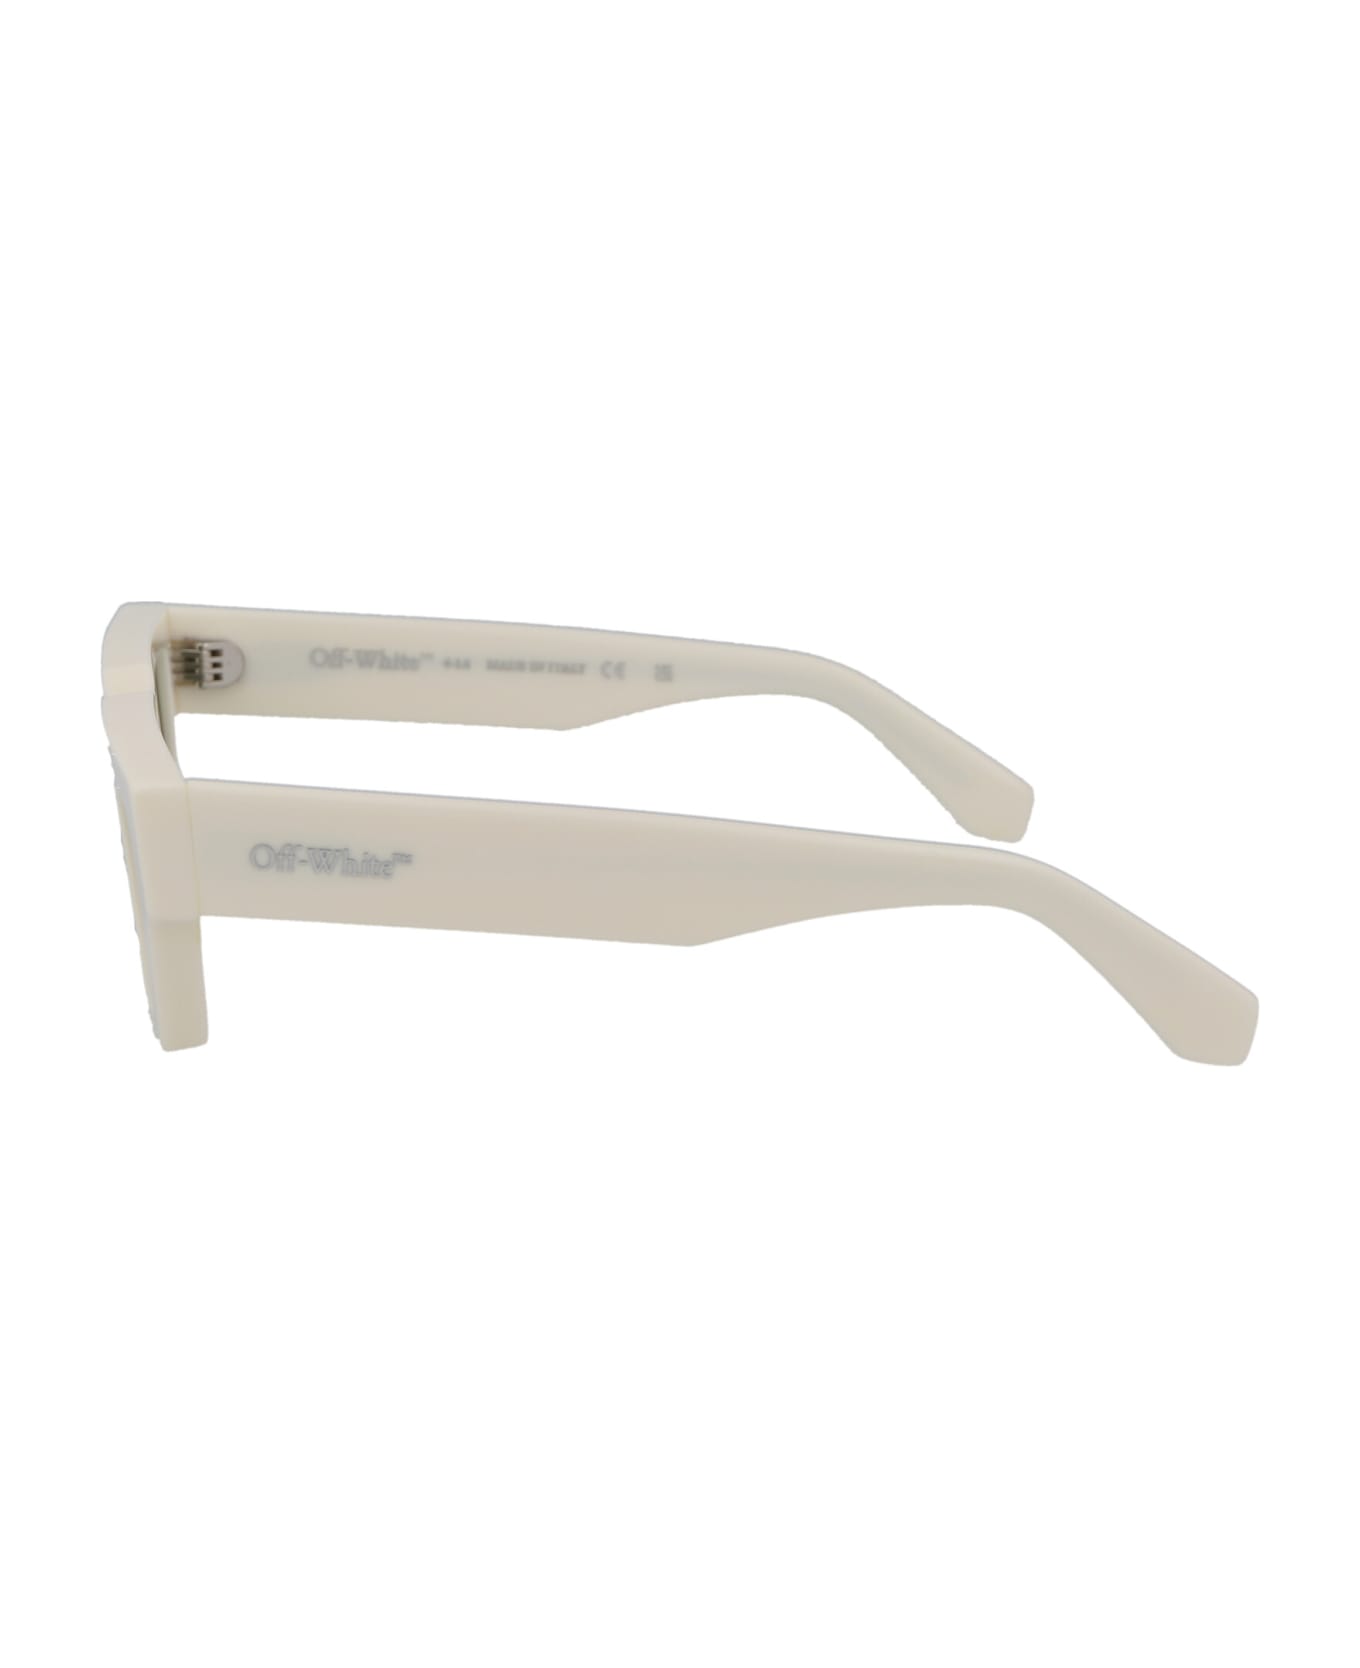 Off-White Manchester Sunglasses - 0155 WHITE